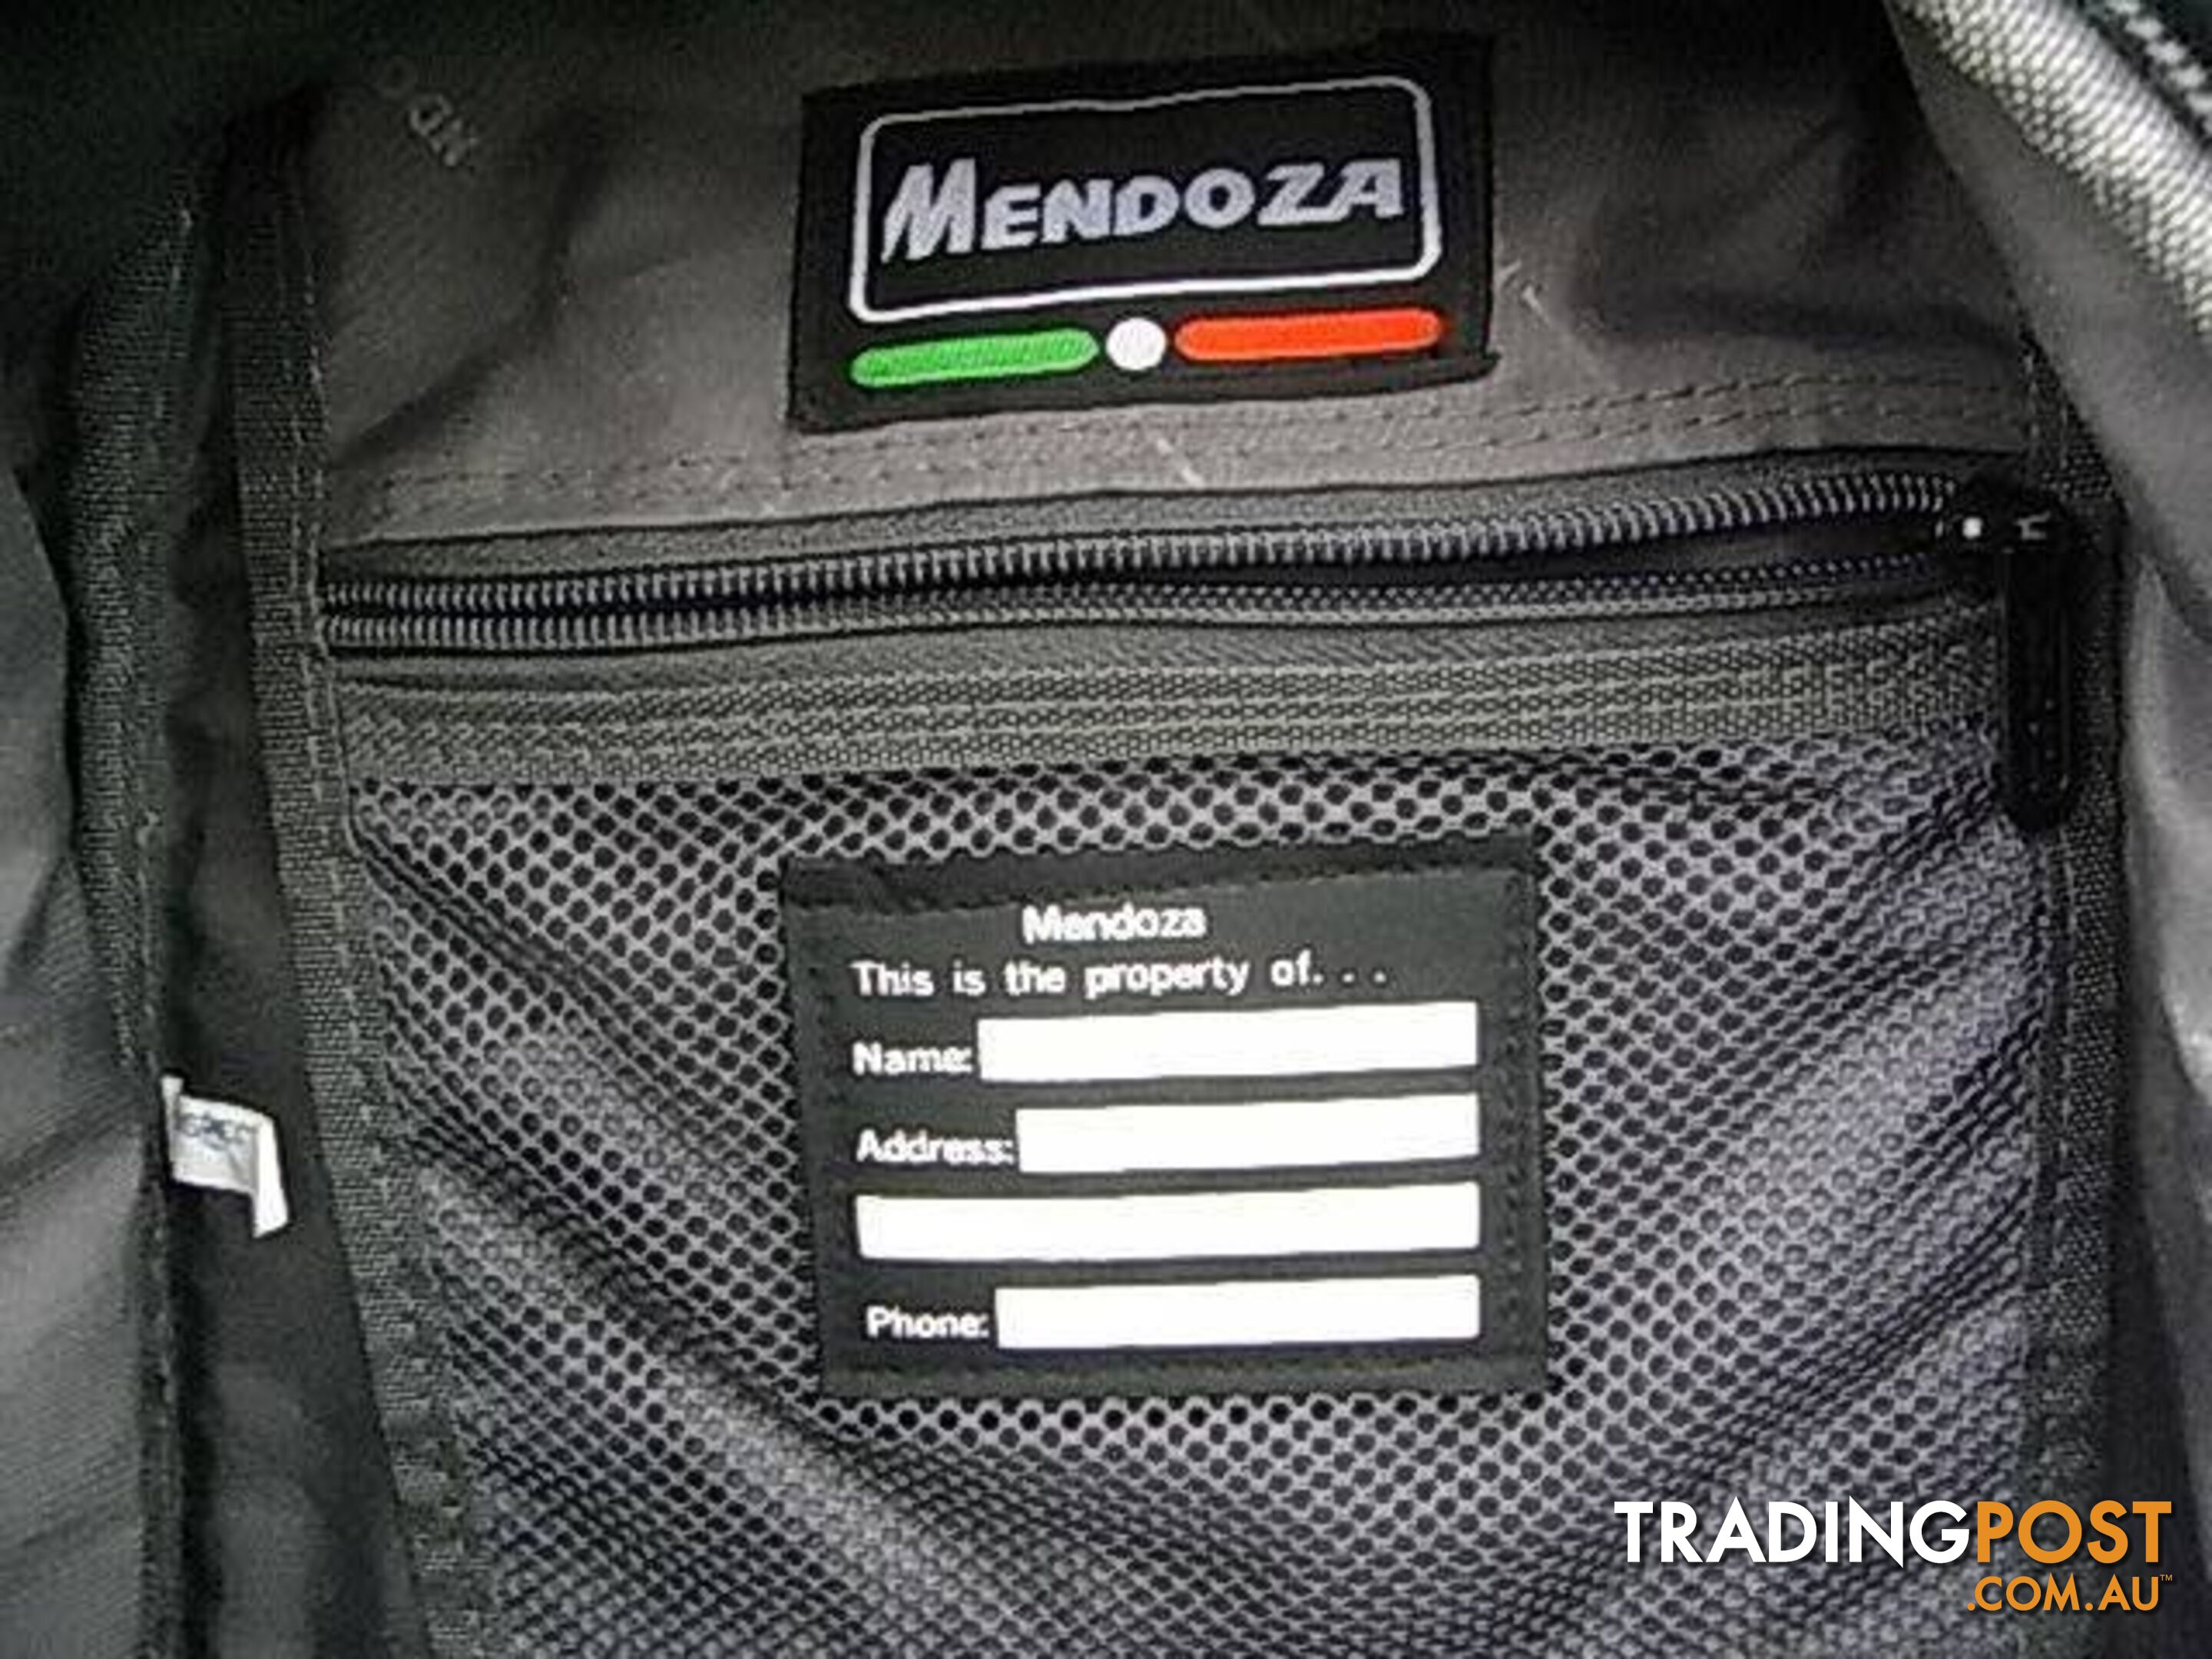 NEW MENDOSA BACKPACK BAG